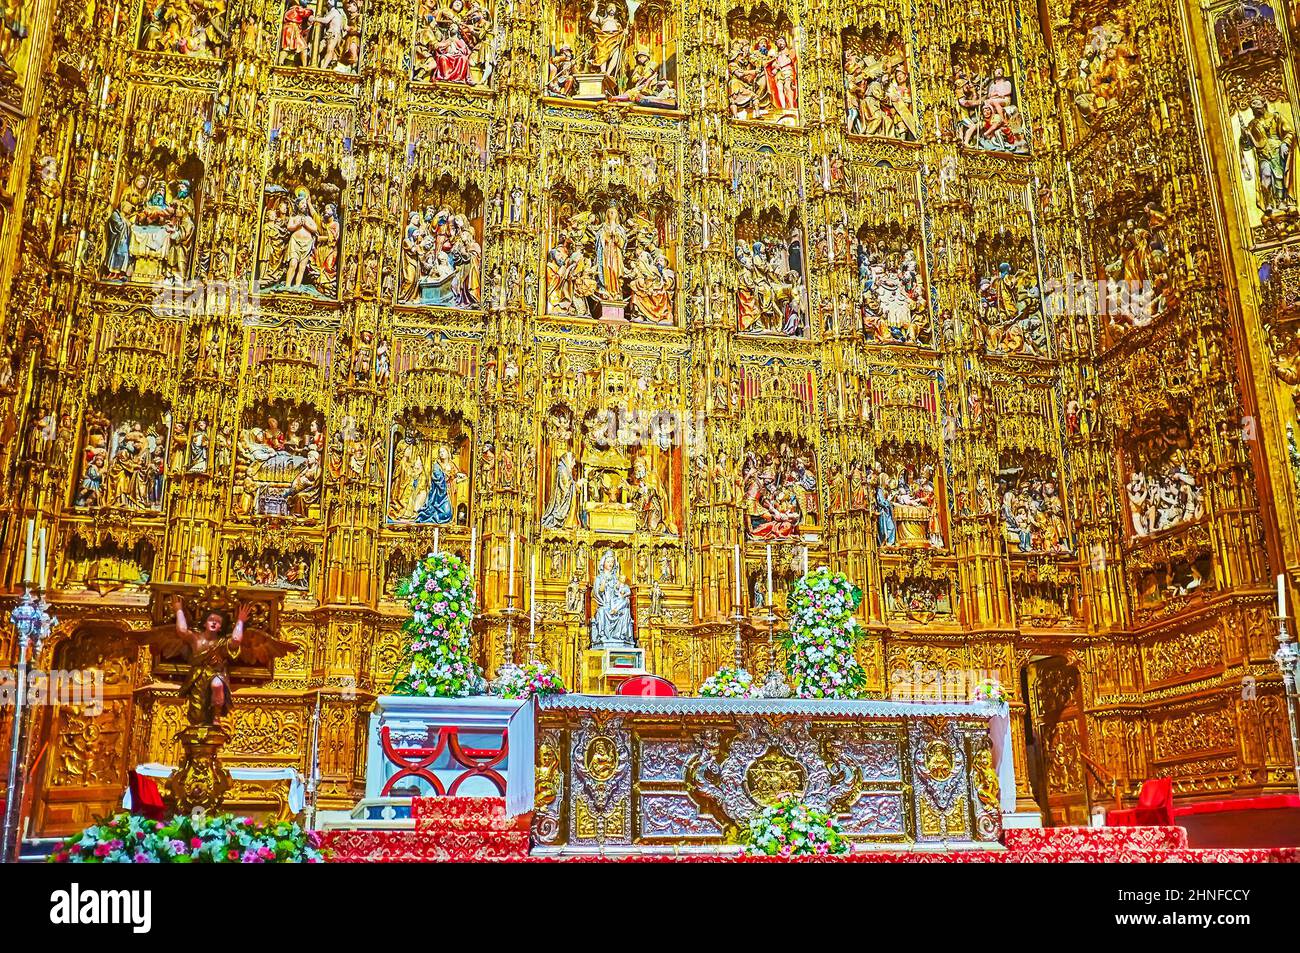 SEVILLA, SPANIEN - 29. SEPTEMBER 2019: Der historische gotische Hauptaltar der Kathedrale von Sevilla ist mit geschnitzten vergoldeten Ornamenten und Skulpturen geschmückt Stockfoto